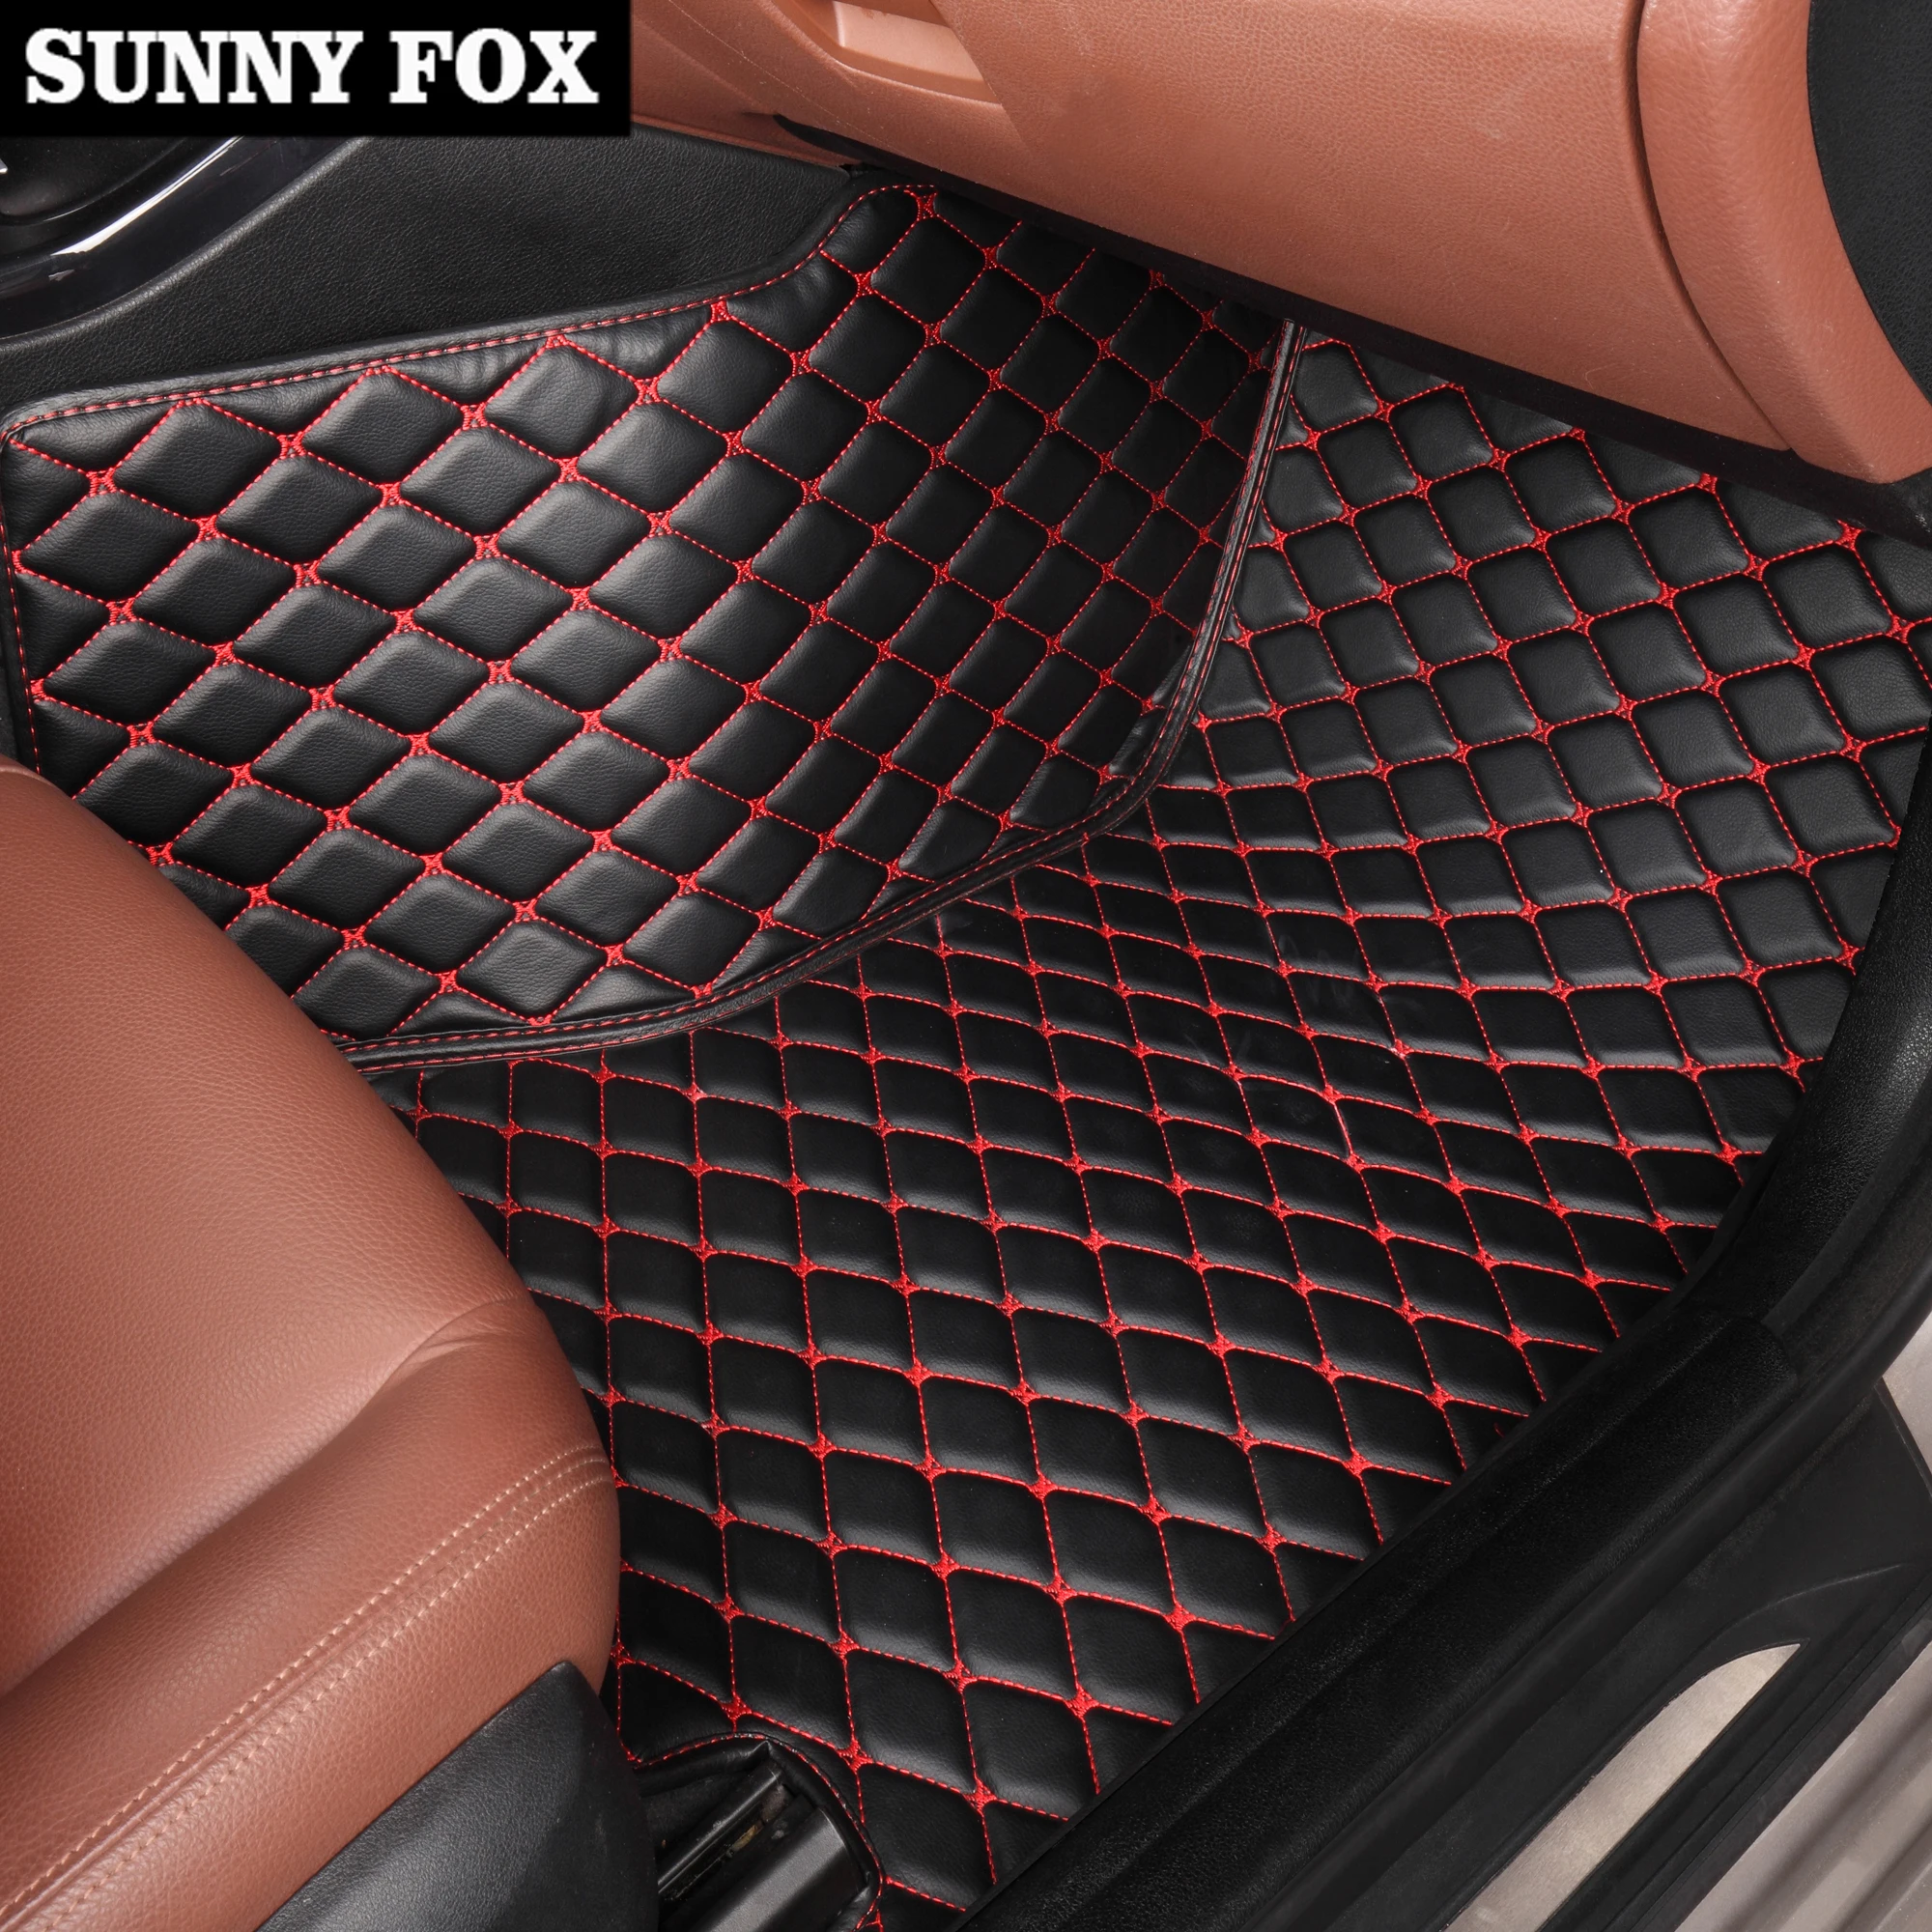 "SunnY Fox автомобильные коврики для BMW F10 F11 F15 F16 F20 F25 F30 F34 E60 E70 E90 1 3 4 5 7 серии GT X1 X3 X4 X5 X6 Z4 5D автомобиля-щупы